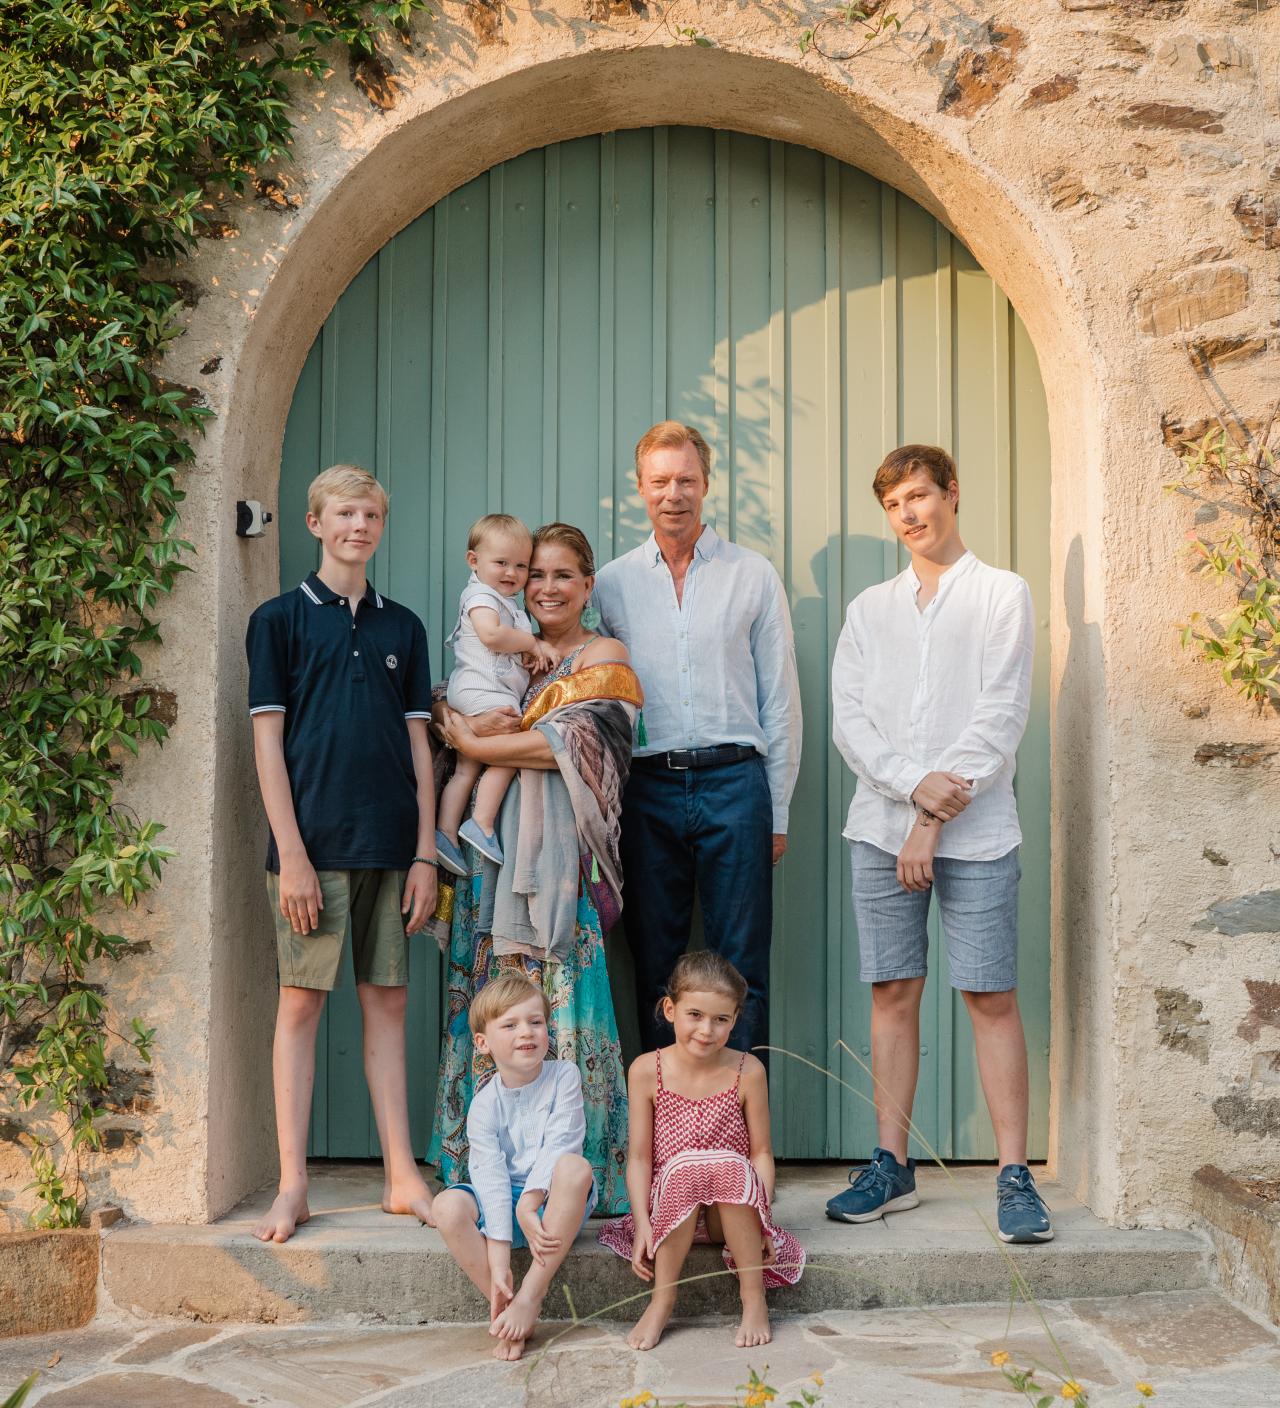 Das großherzogliche Paar mit seinen 5 Enkelkindern